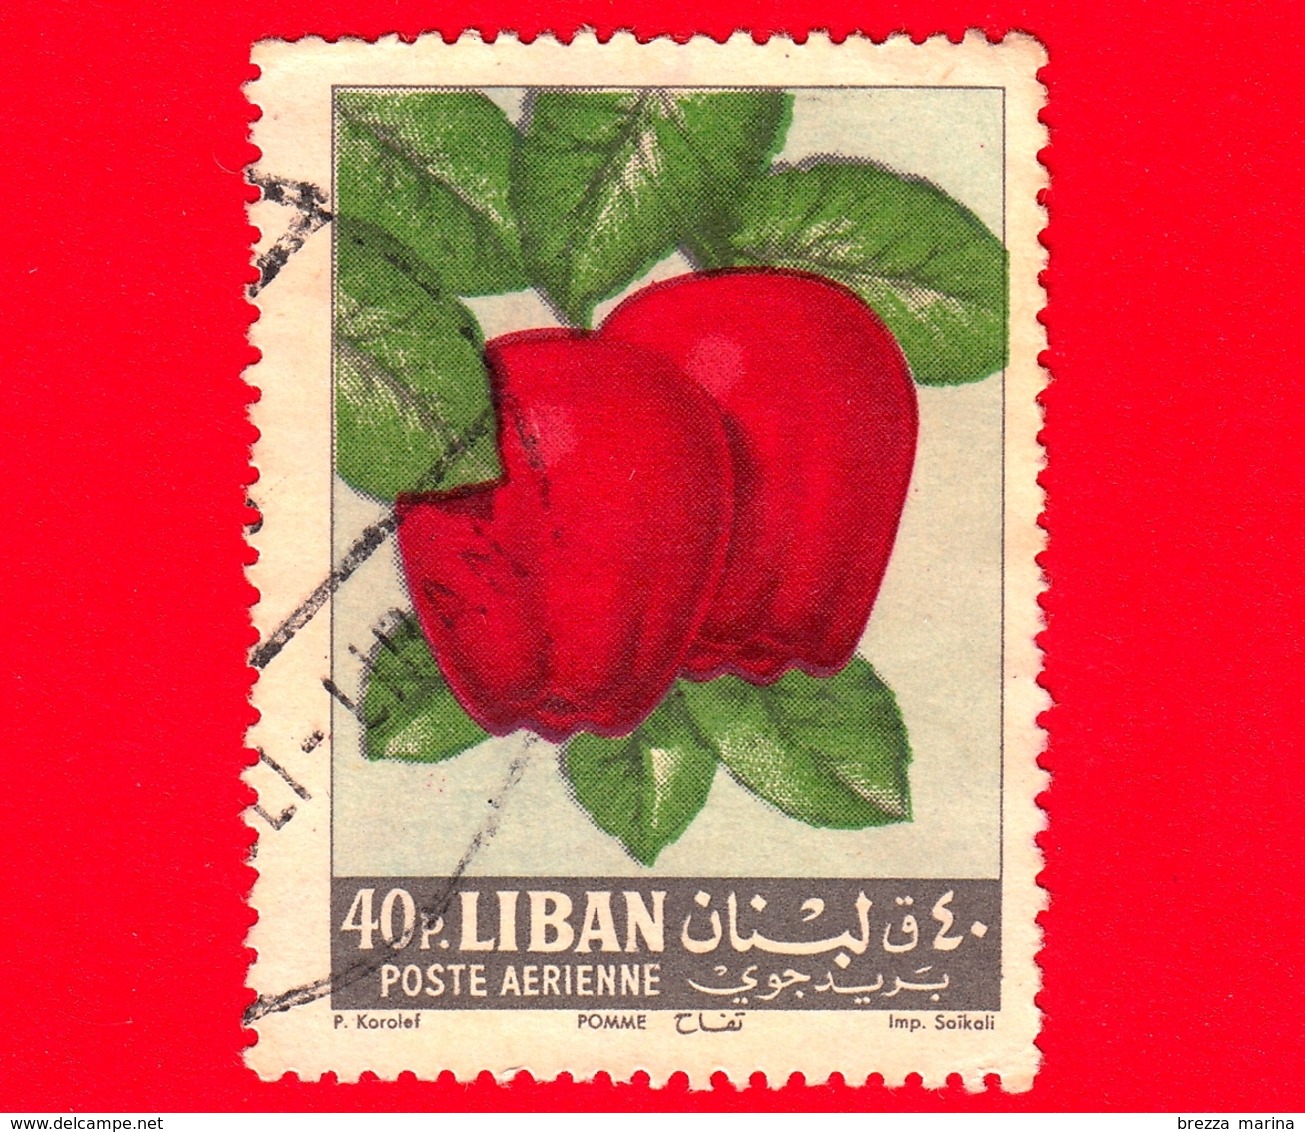 LIBANO - Usato - 1962 - Frutta - Mele - Apples - 40 - P. Aerea - Libano